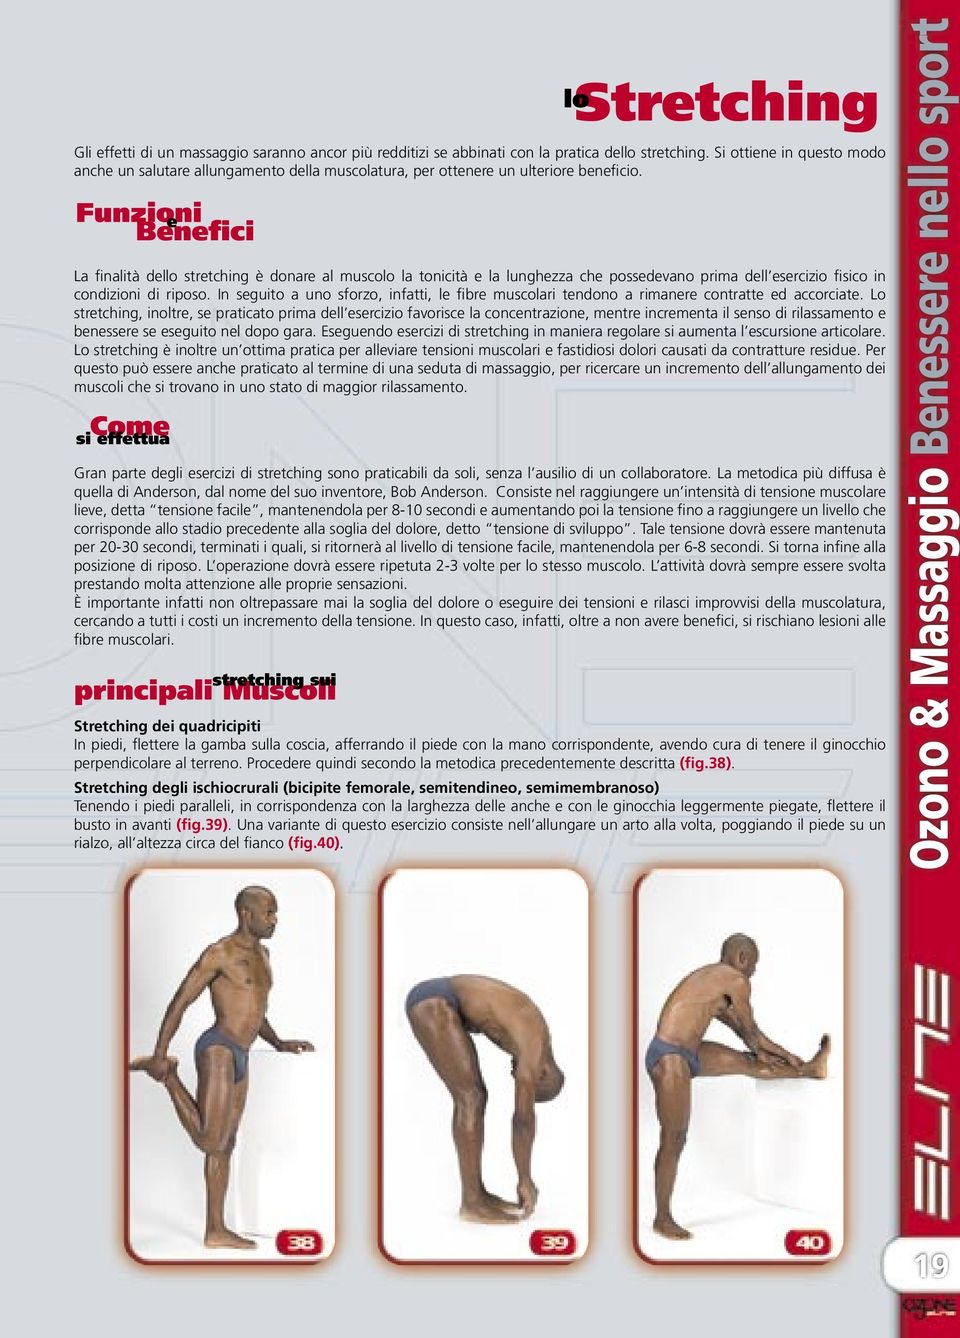 La finalità dello stretching è donare al muscolo la tonicità e la lunghezza che possedevano prima dell esercizio fisico in condizioni di riposo.